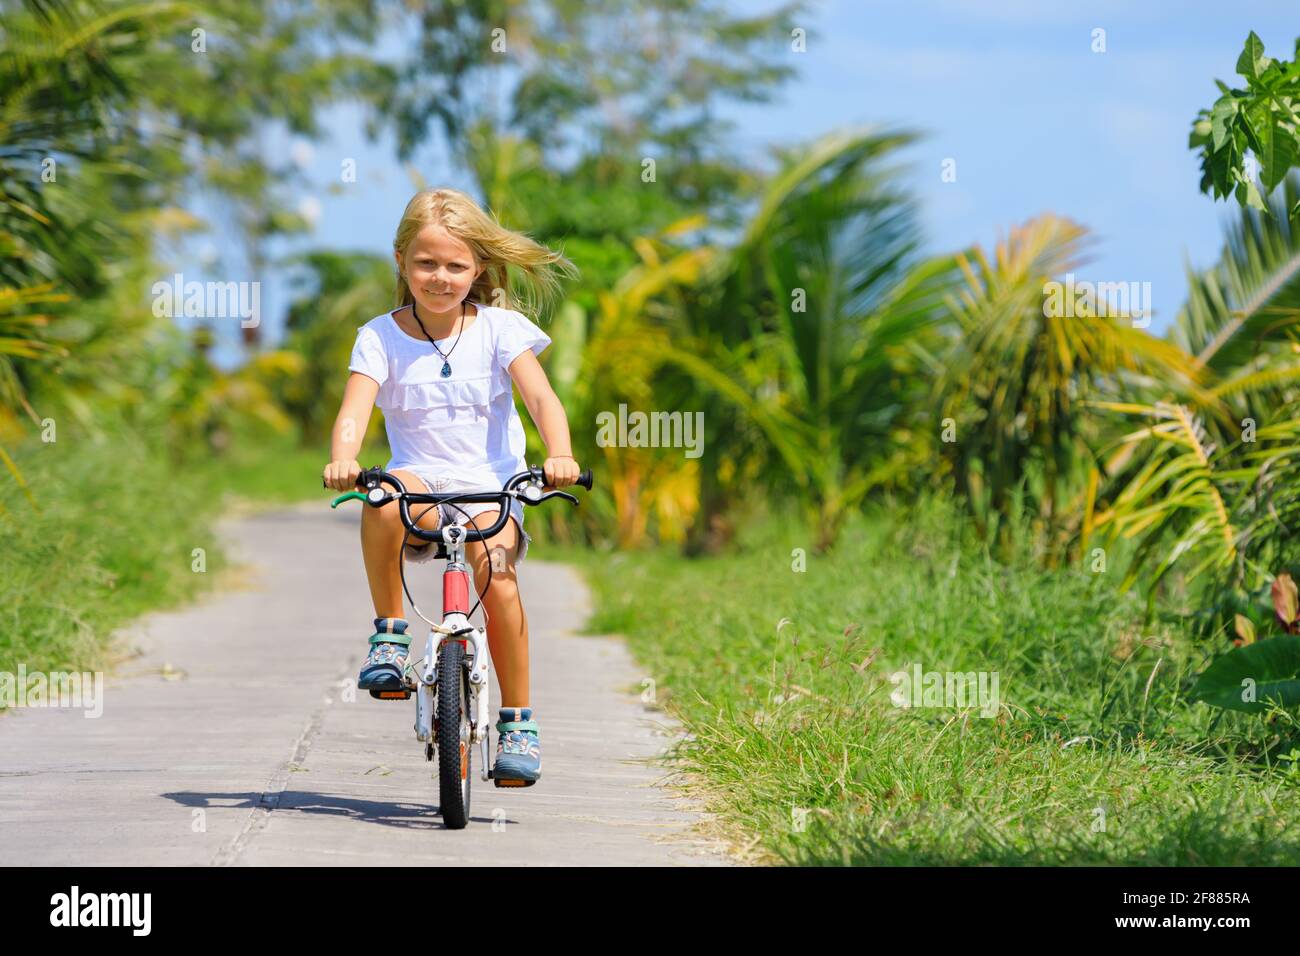 Randonnée à vélo. Jeune cycliste enfant à vélo. Un enfant heureux s'amuse sur le sentier. Vie familiale active, sports, activités de plein air Banque D'Images